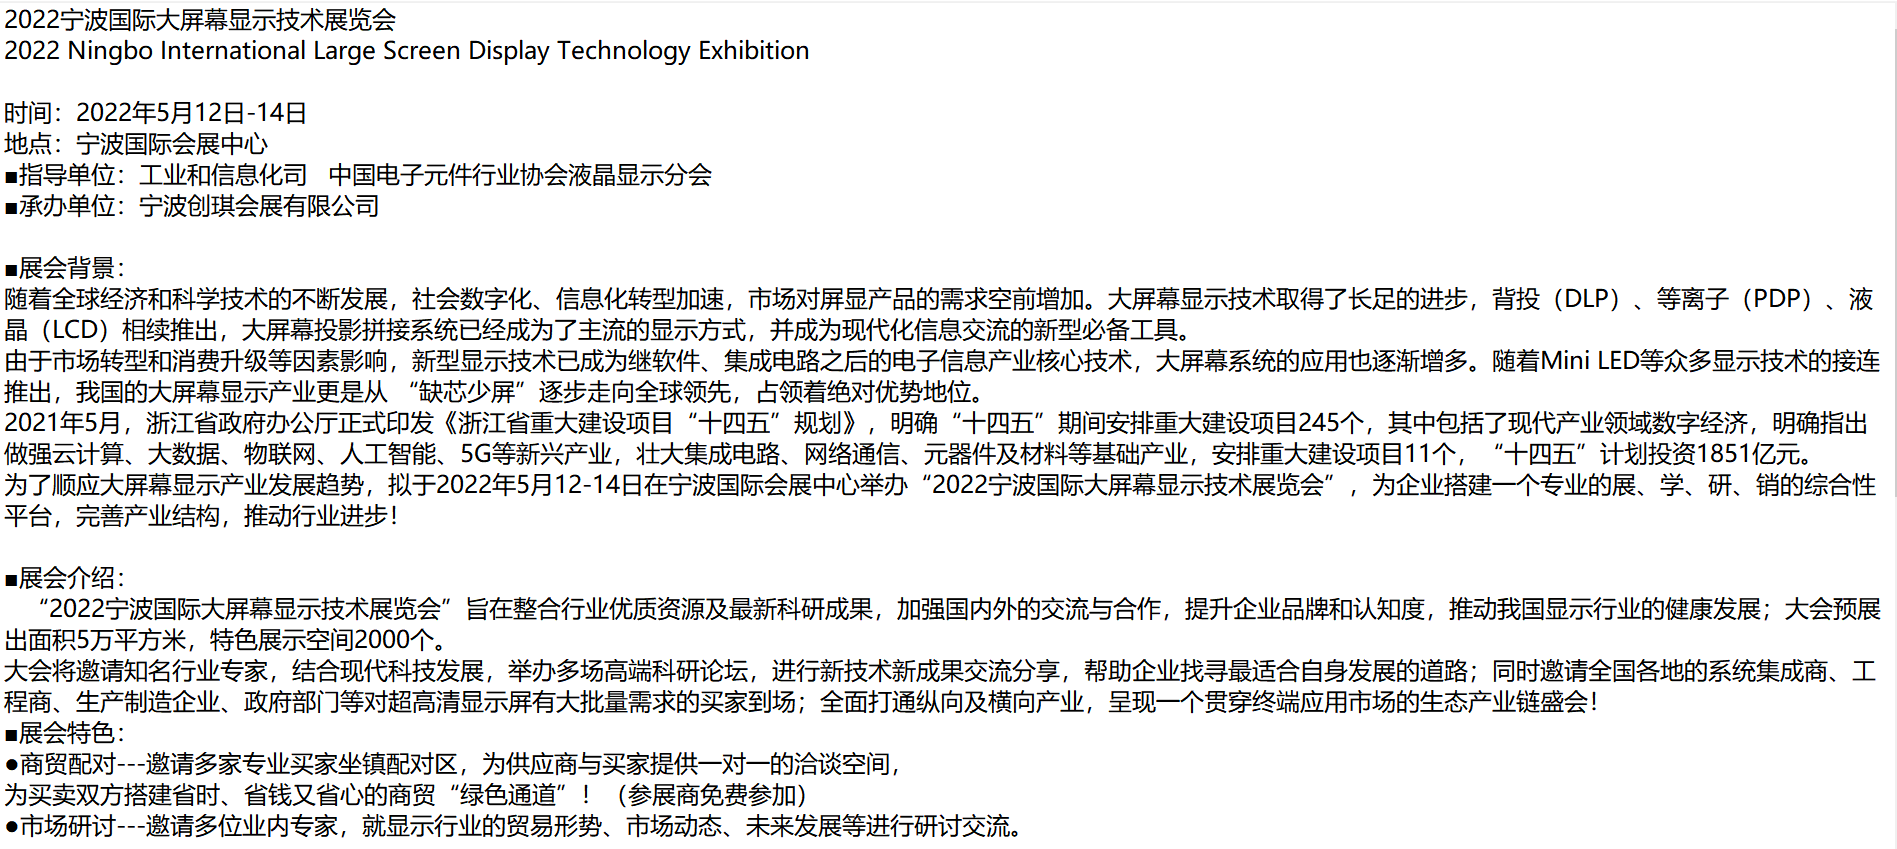 首页_2022宁波大屏幕显示技术展